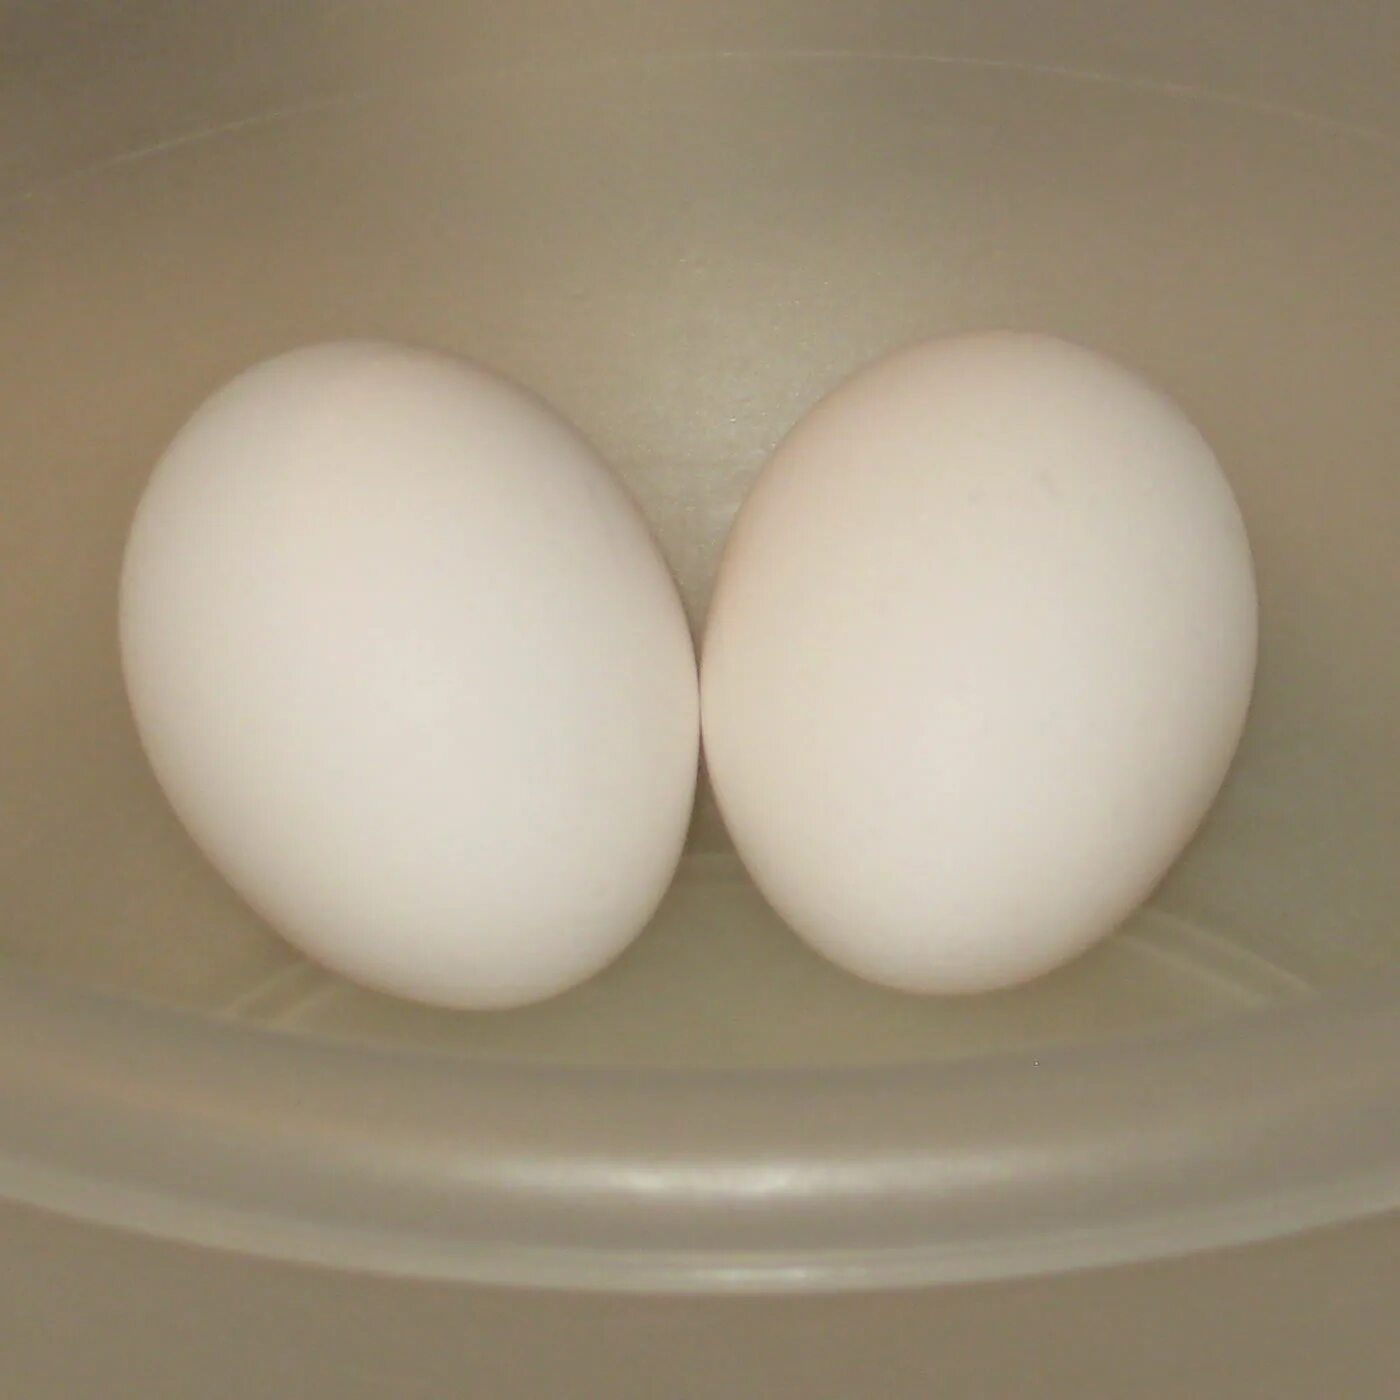 Two eggs. 2 Яйцоголовых. Два яйца. Двойное яйцо. 2 Куриных яйца.